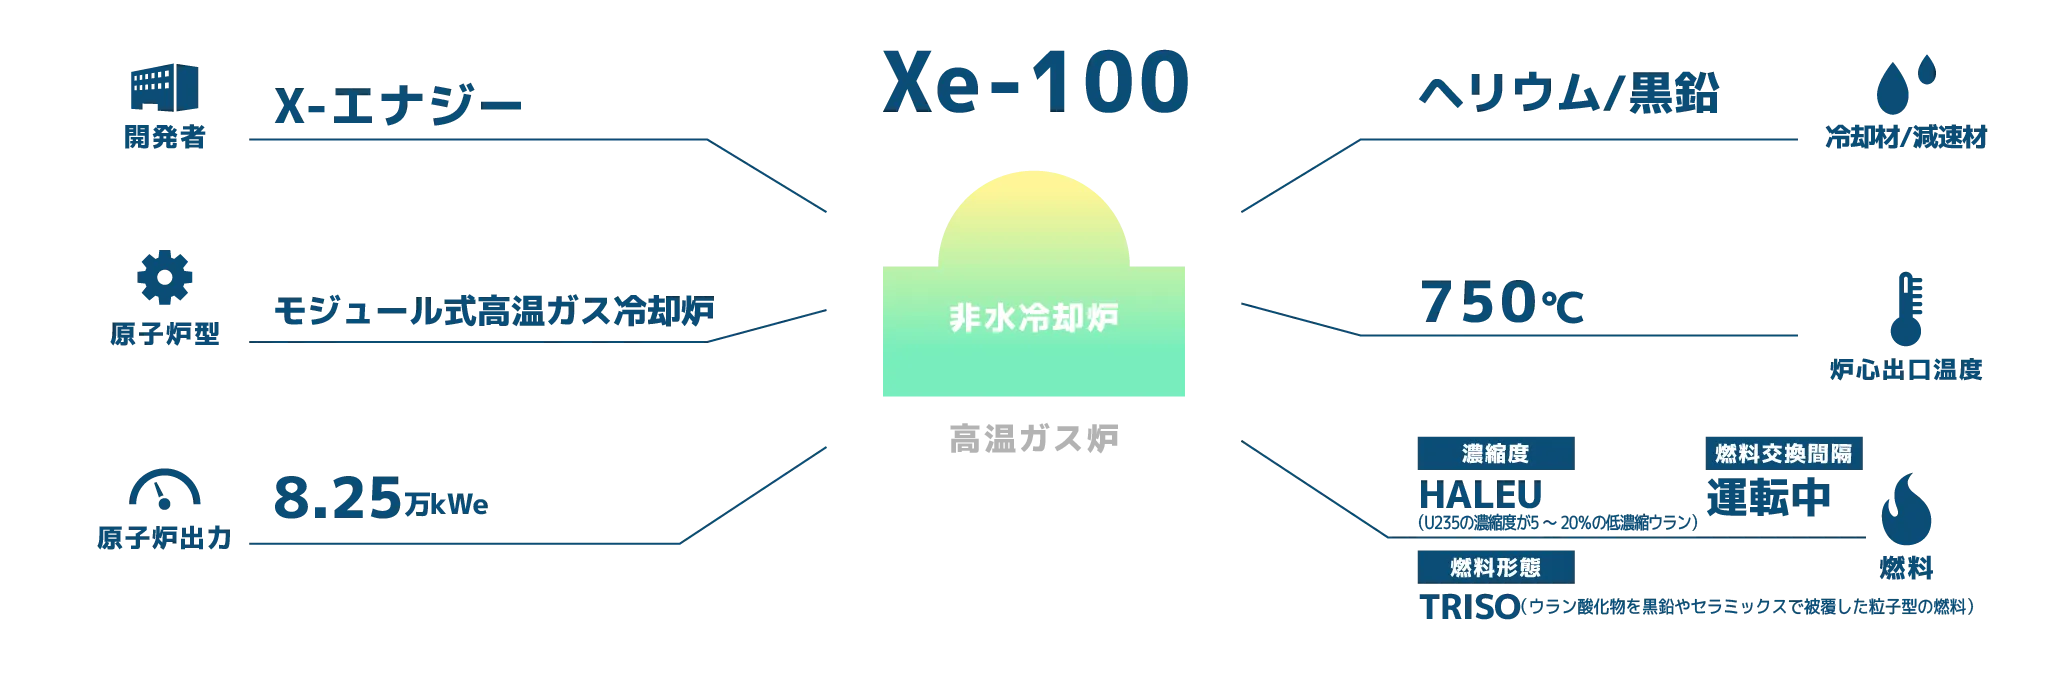 Xe-100